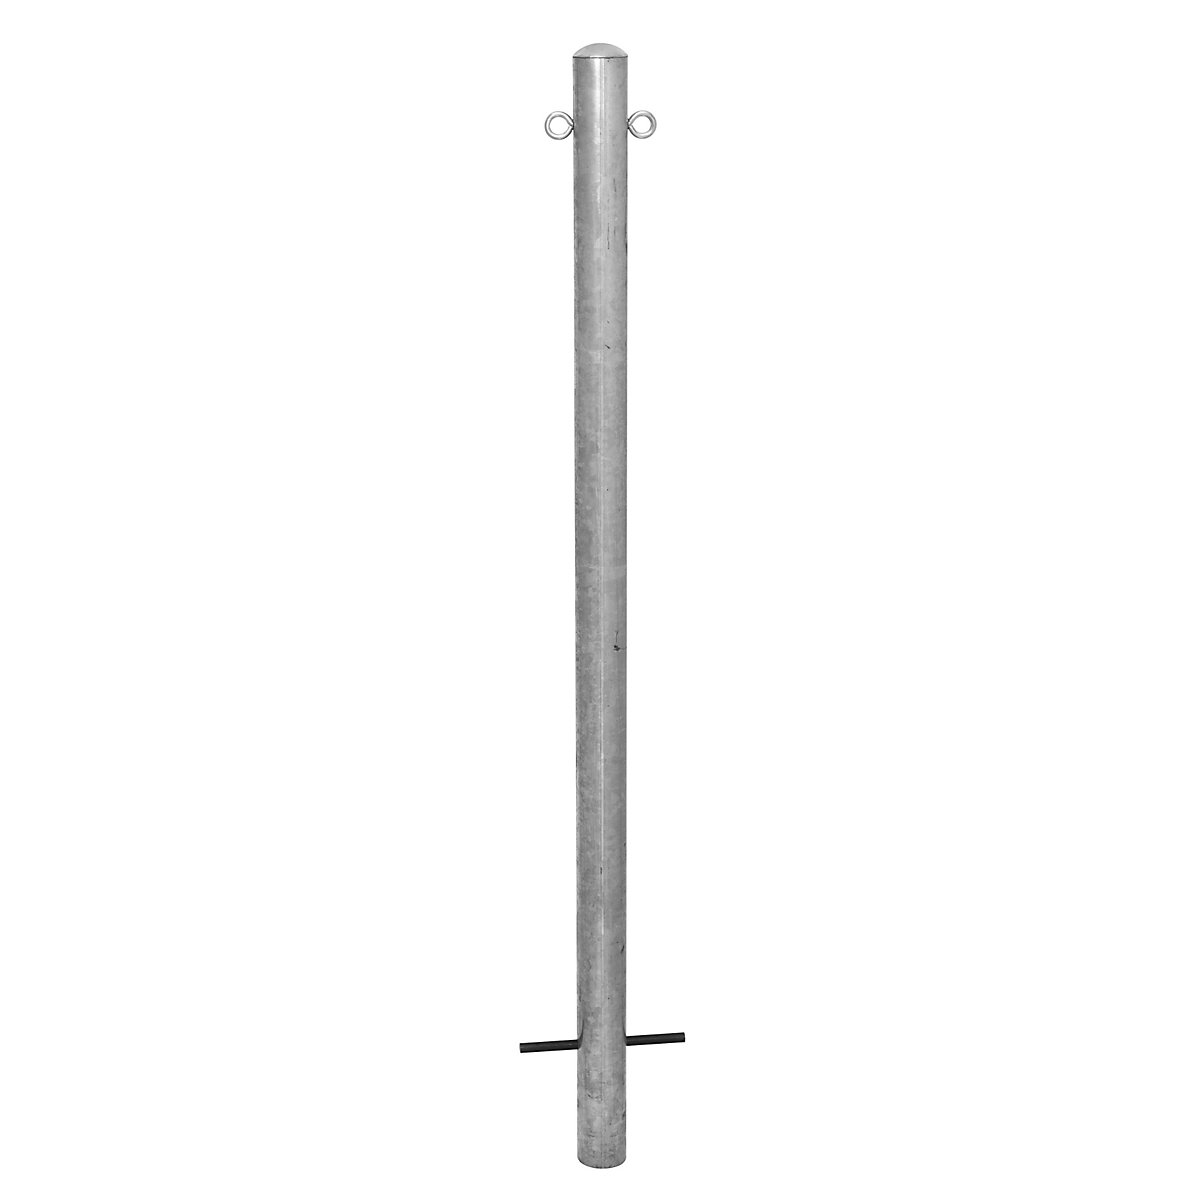 Stup za ograđivanje, za betoniranje, Ø 90 mm, vruće pocinčana izvedba, 2 ušice-11